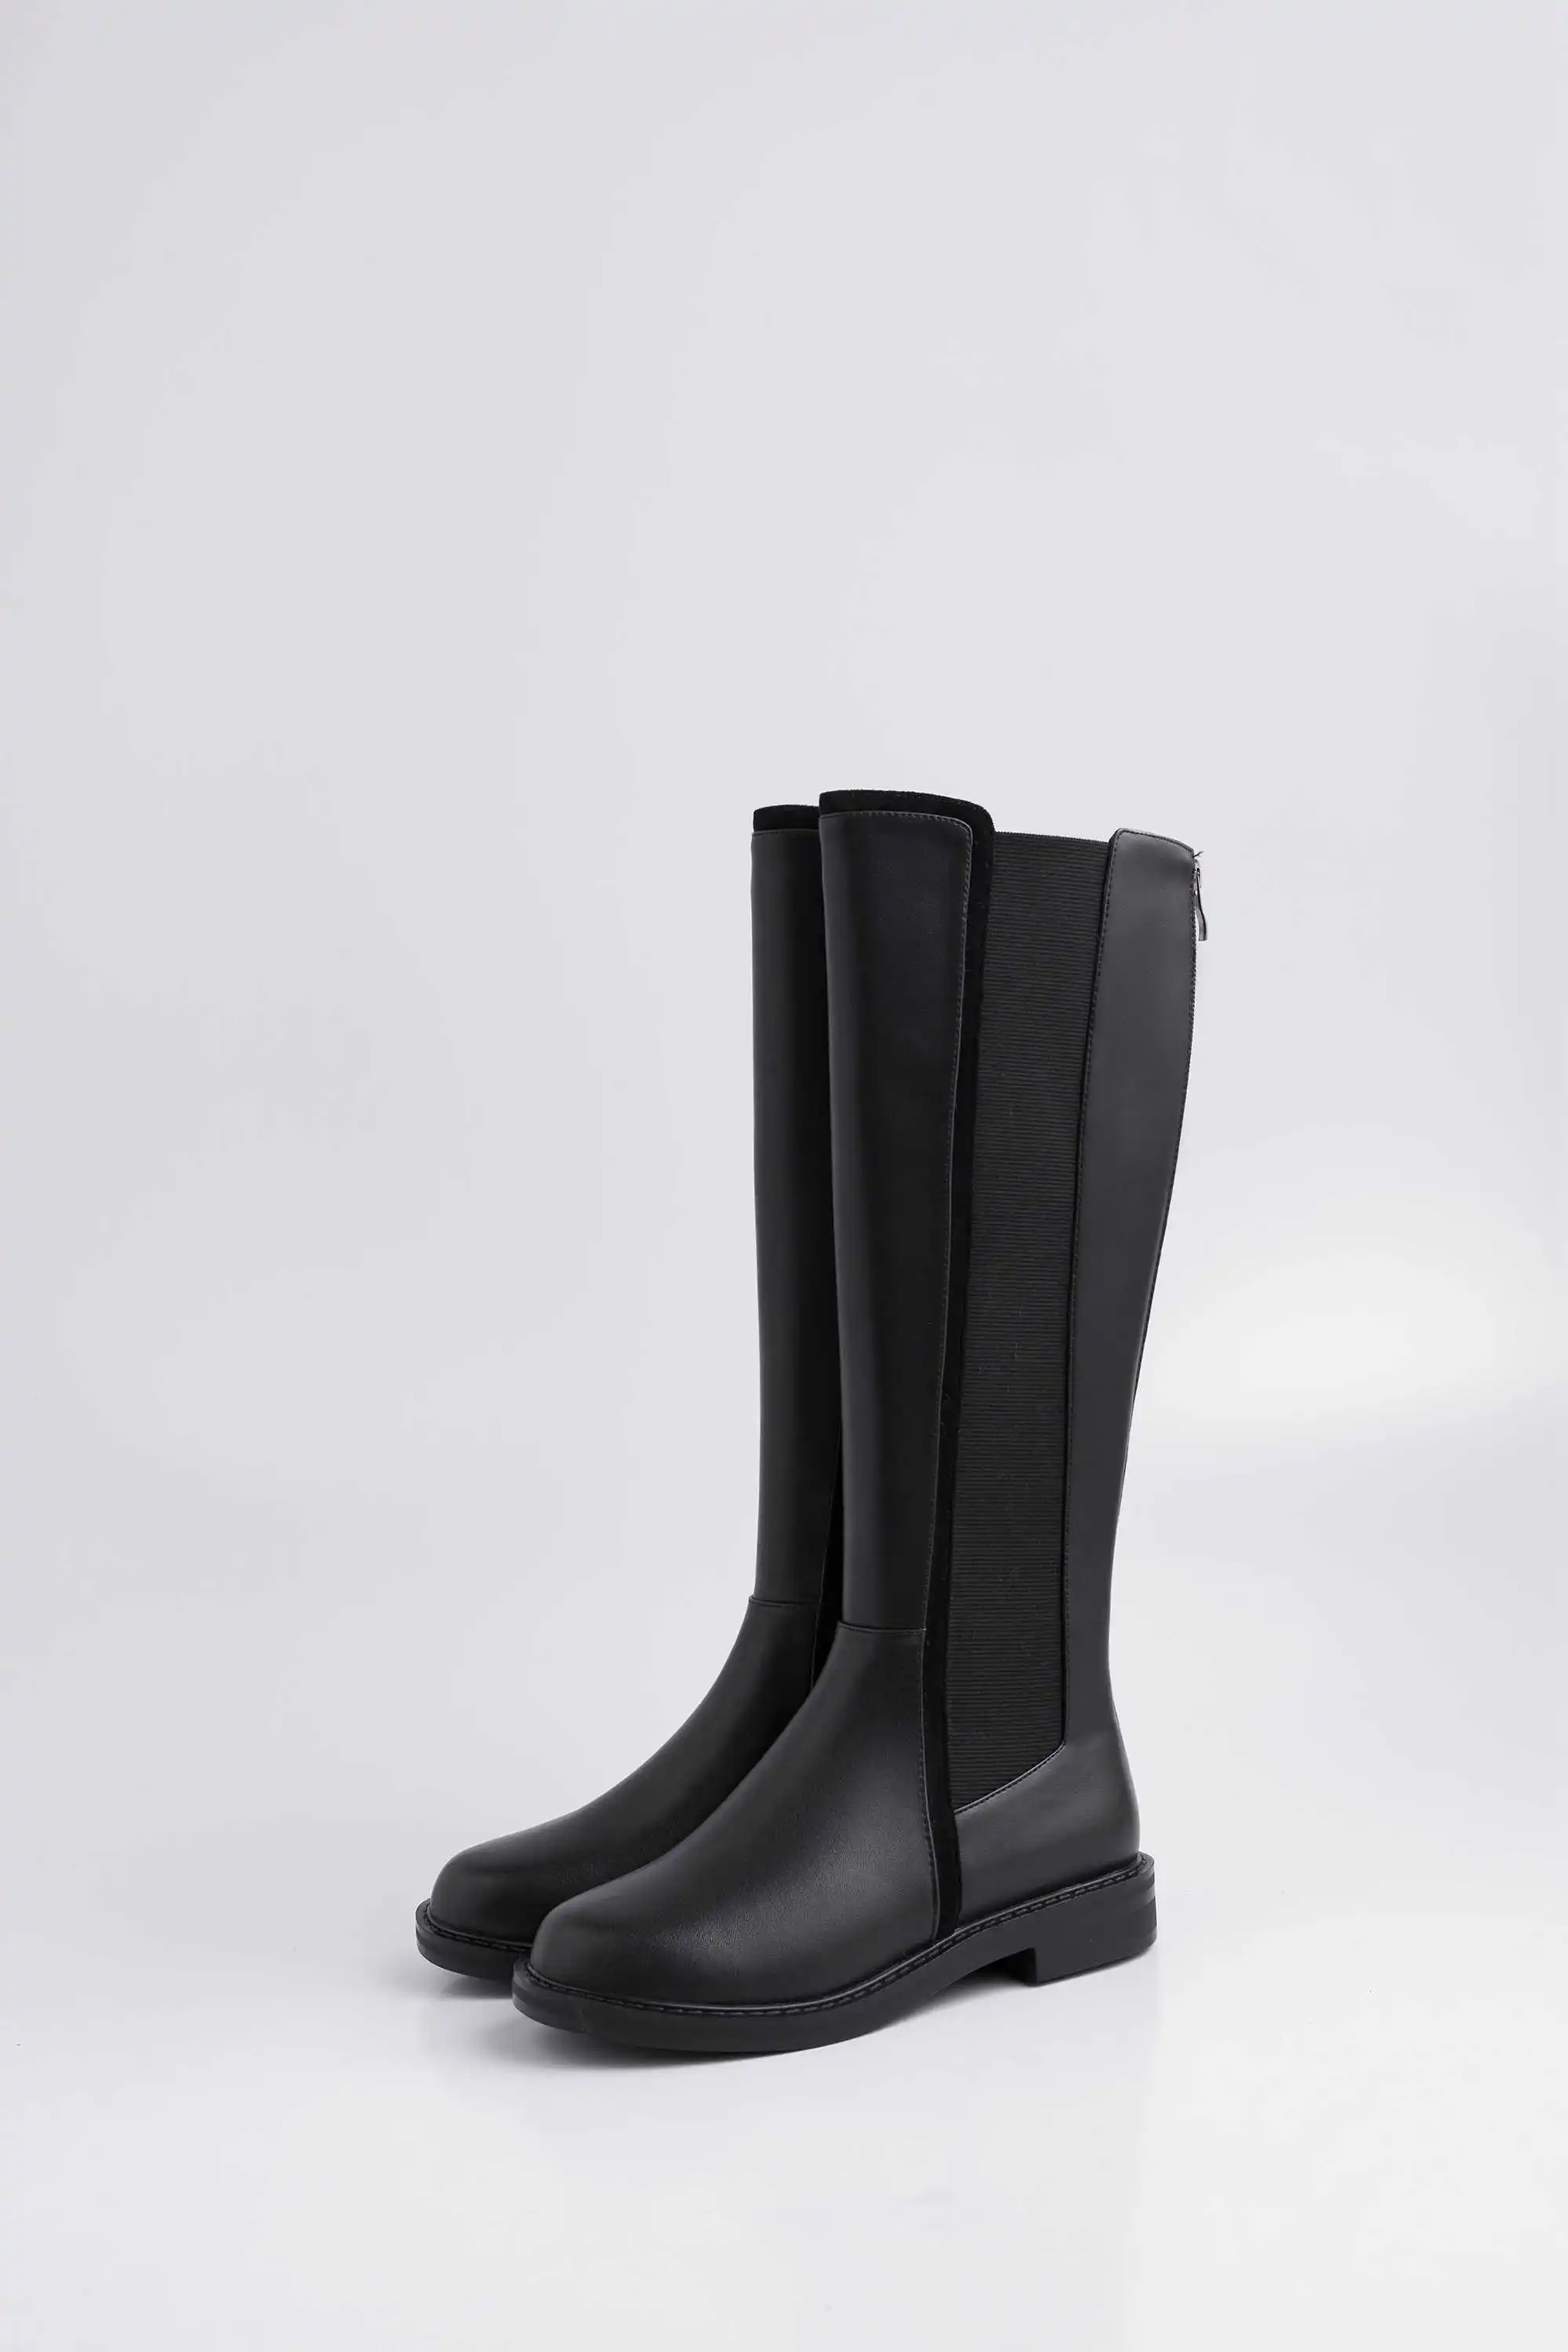 Lenkisen/большие размеры; Простые Стильные рыцарские сапоги из натуральной кожи с круглым носком на среднем каблуке; зимние теплые женские